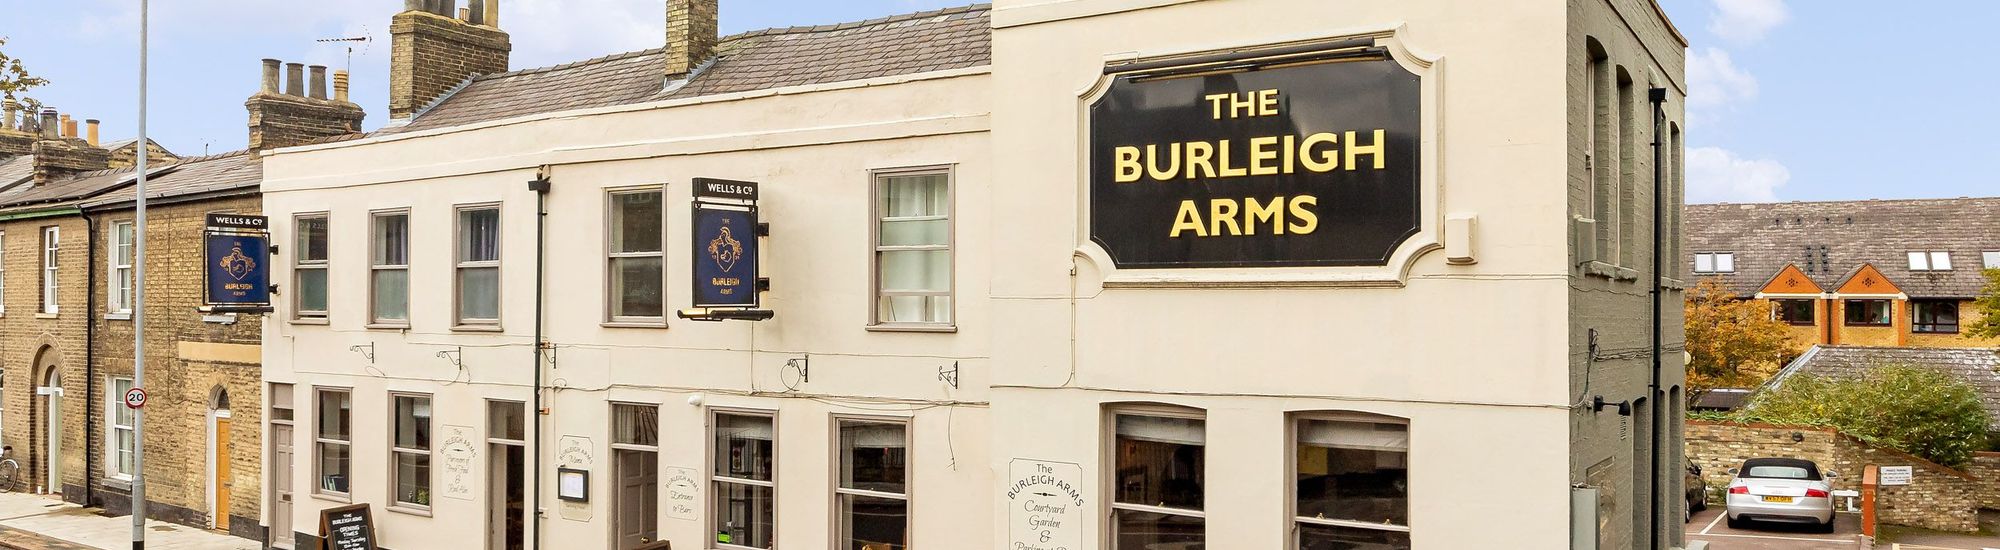 The Burleigh Arms, Cambridge